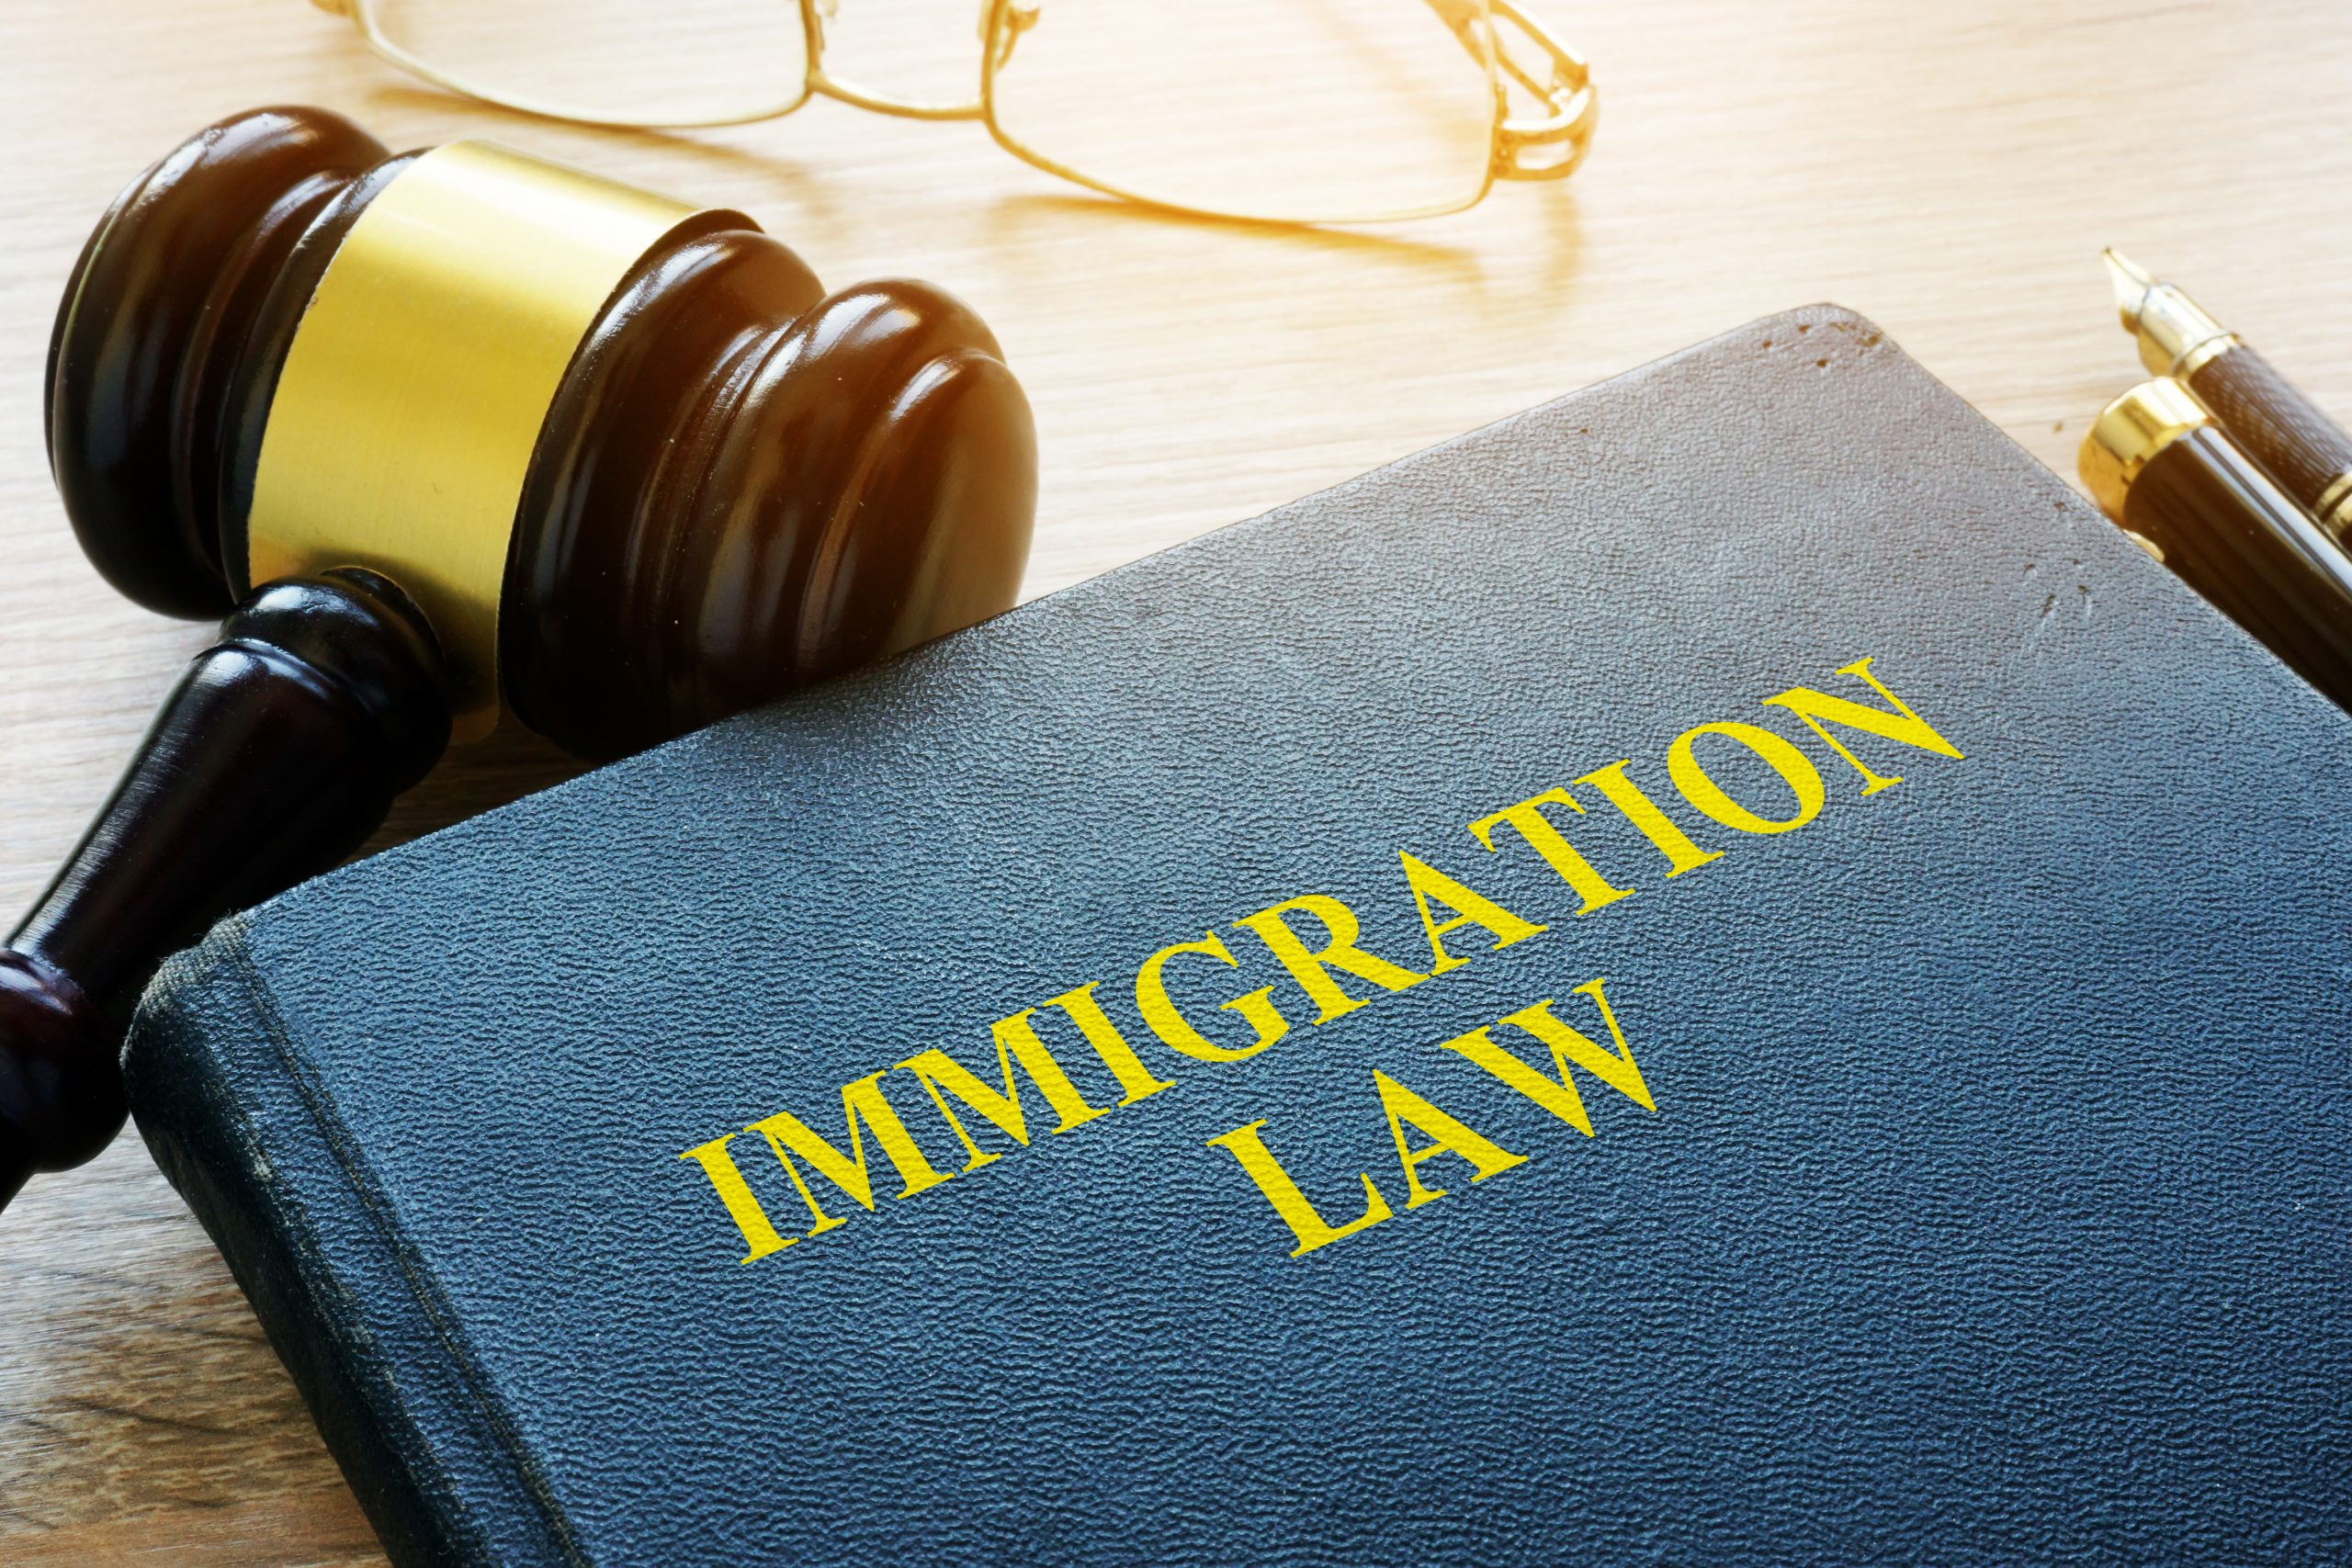 قوانين مهاجرت